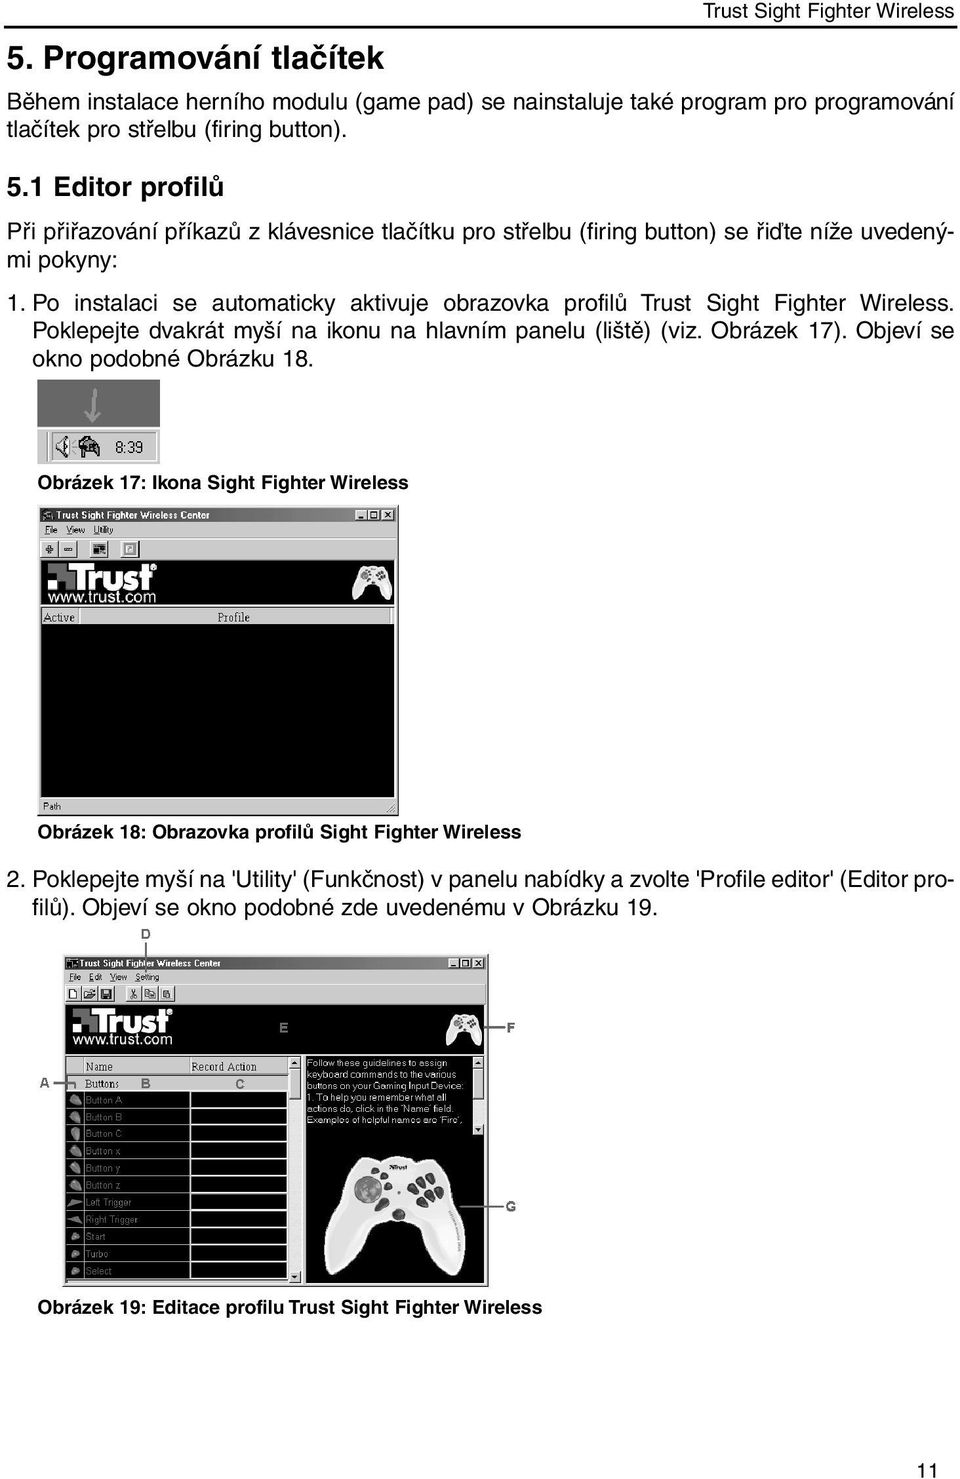 Po instalaci se automaticky aktivuje obrazovka profilů Trust Sight Fighter Wireless. Poklepejte dvakrát myší na ikonu na hlavním panelu (liště) (viz. Obrázek 17). Objeví se okno podobné Obrázku 18.